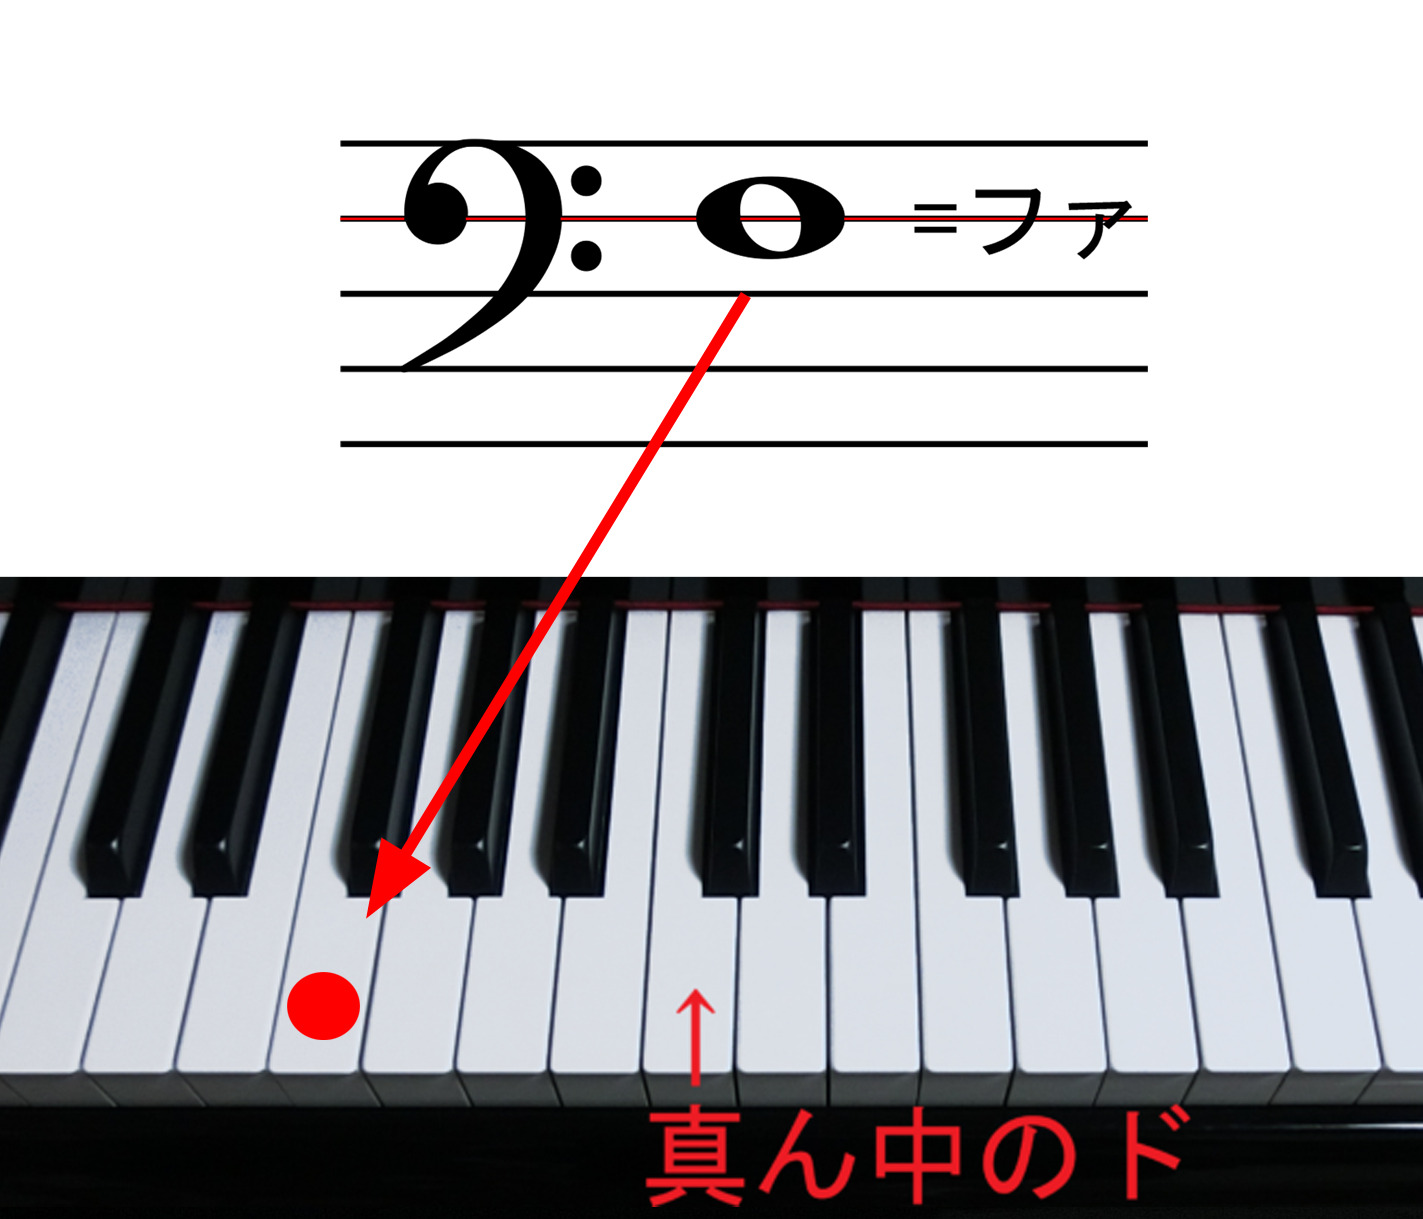 ヘ音記号が示すファの音とファの鍵盤の位置